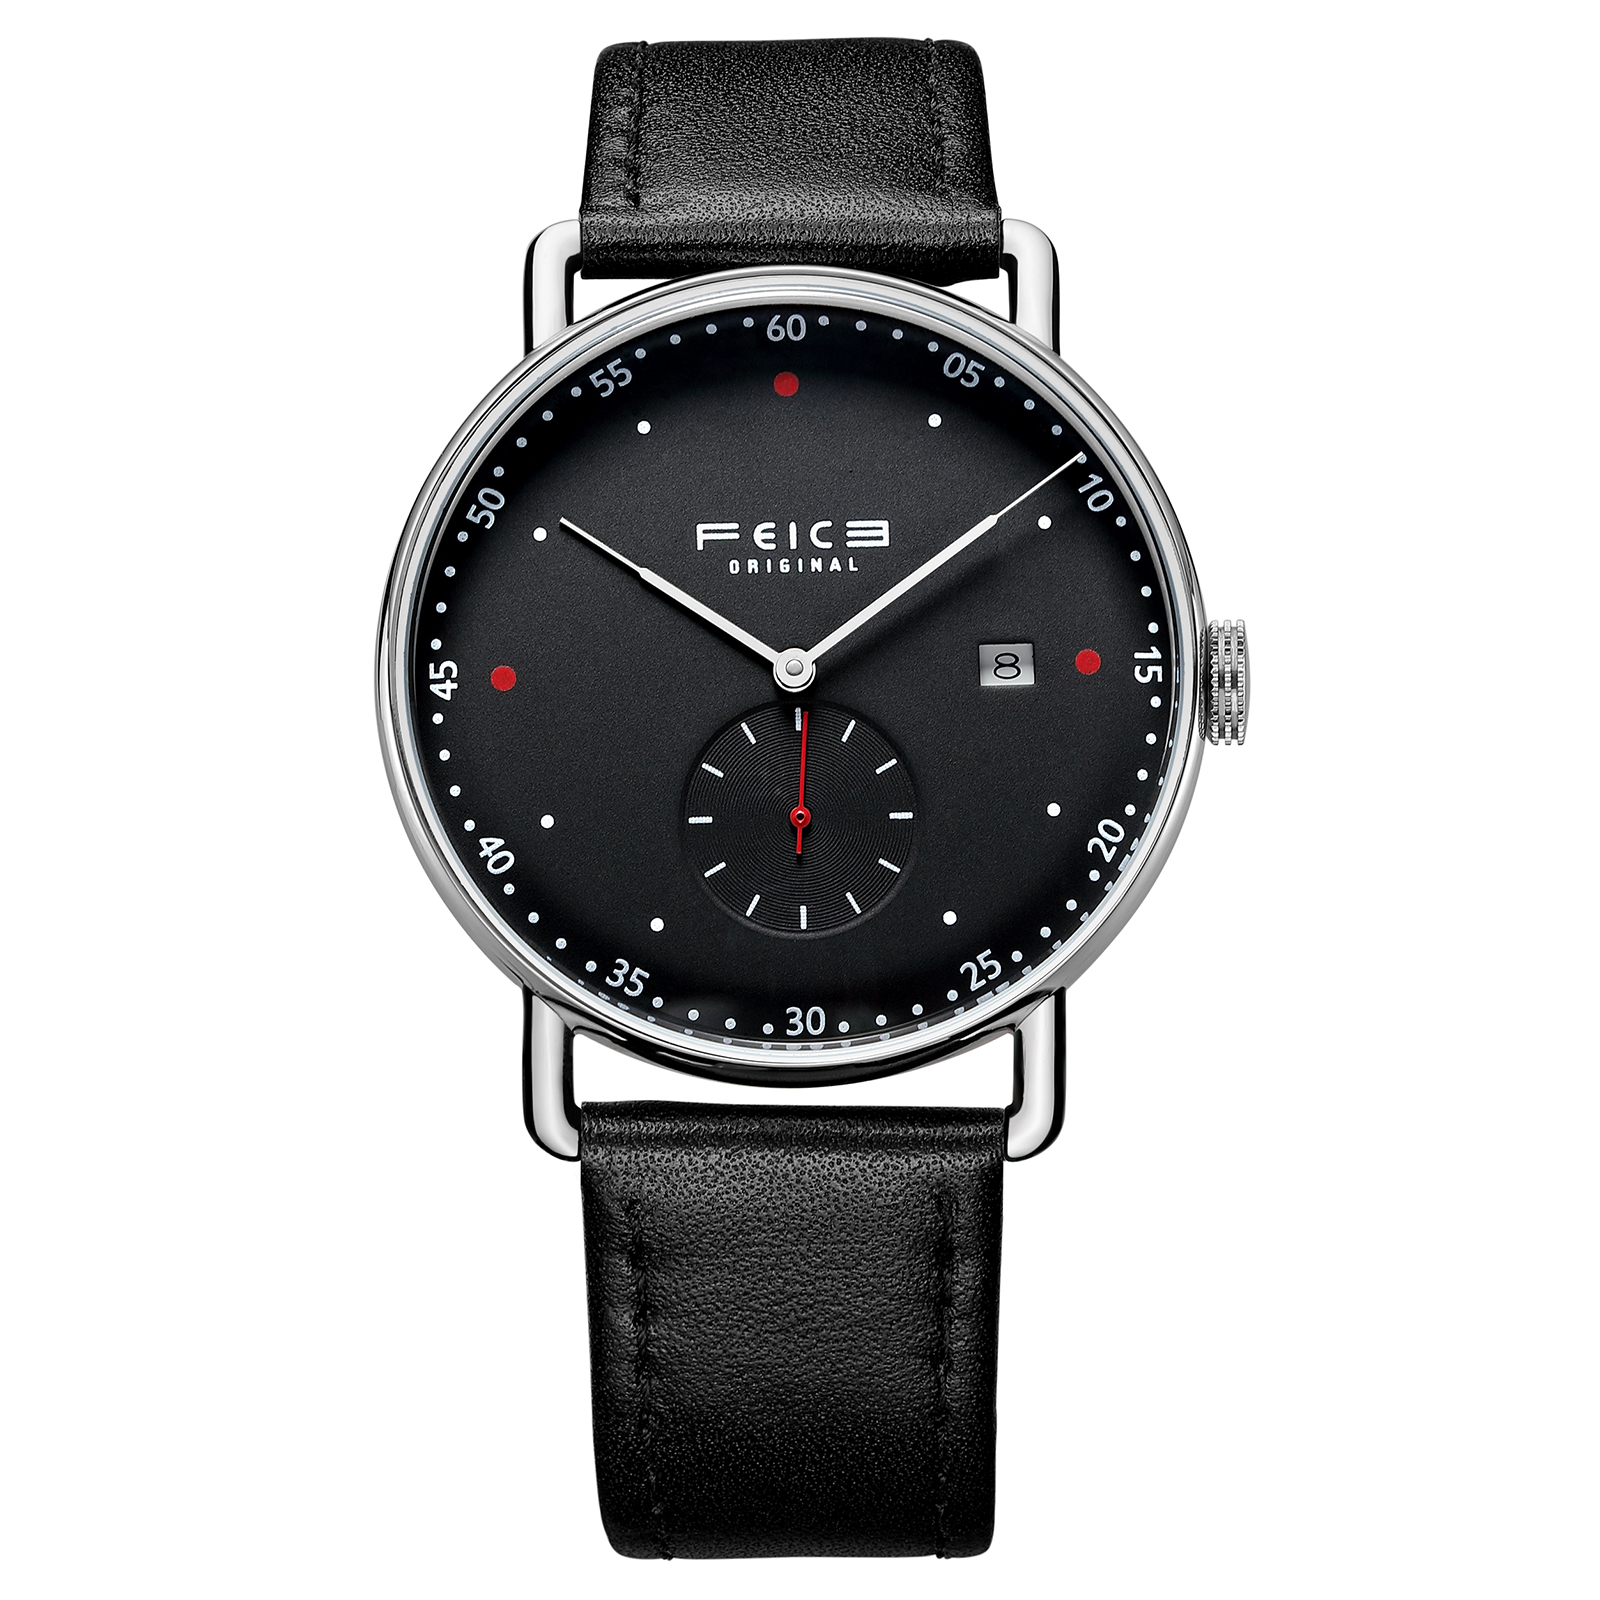 FM506 Bauhaus Watch